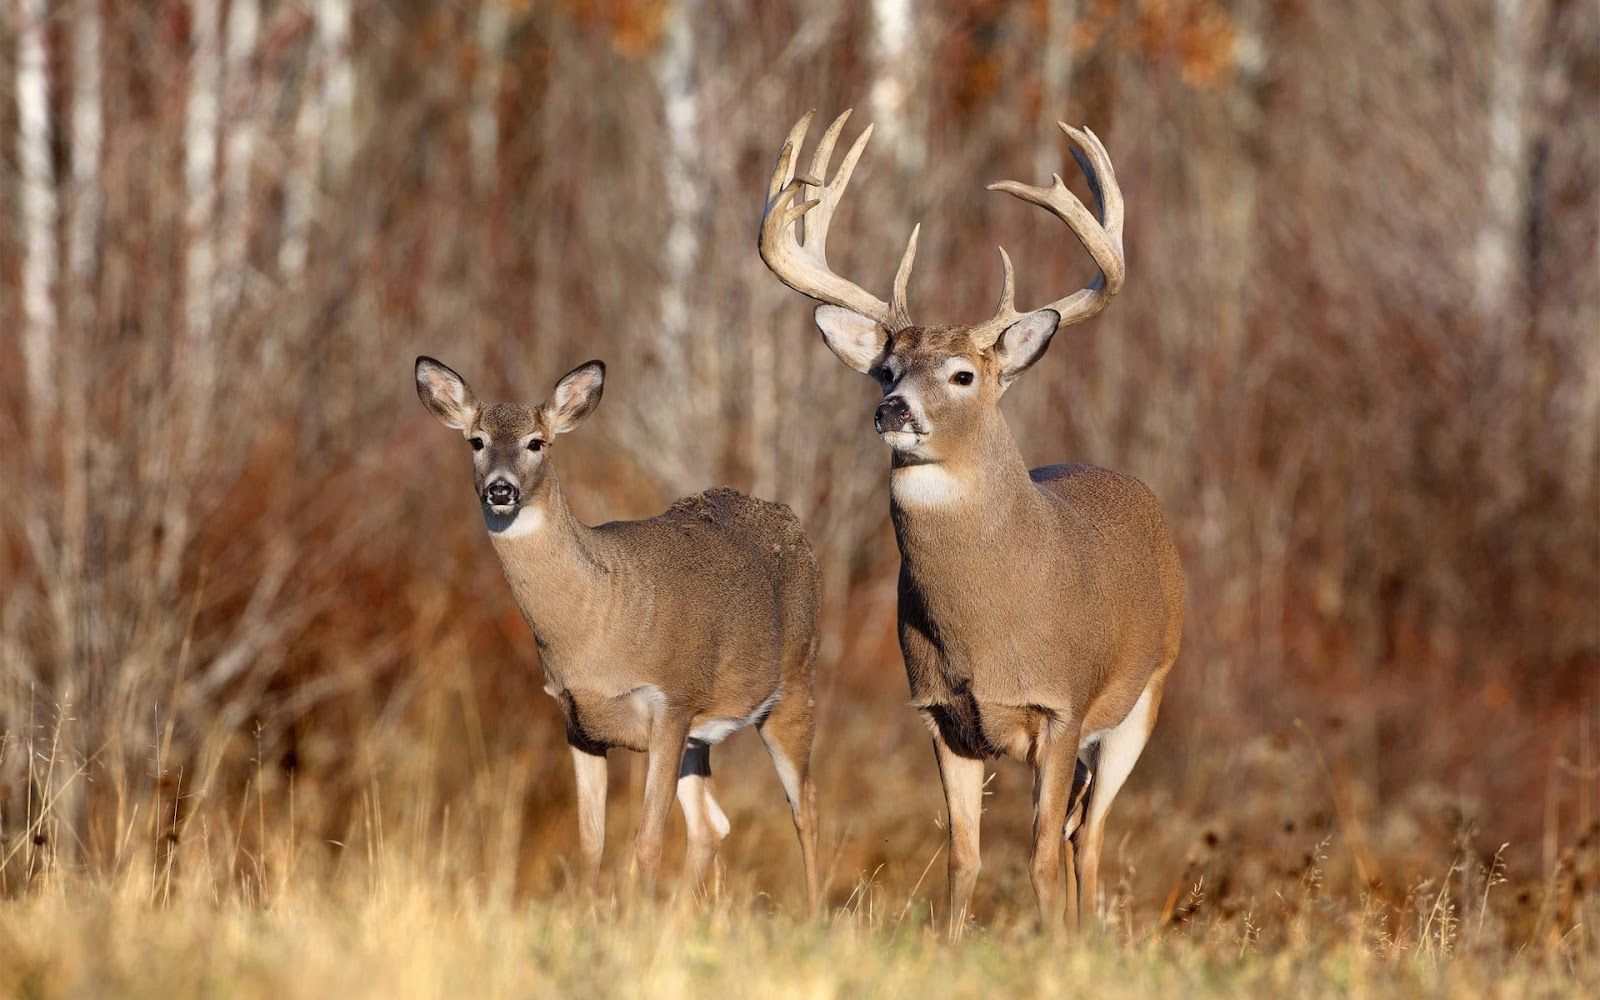 Deer Wallpaper Free. Deer wallpaper, Whitetail deer hunting, Hunting background